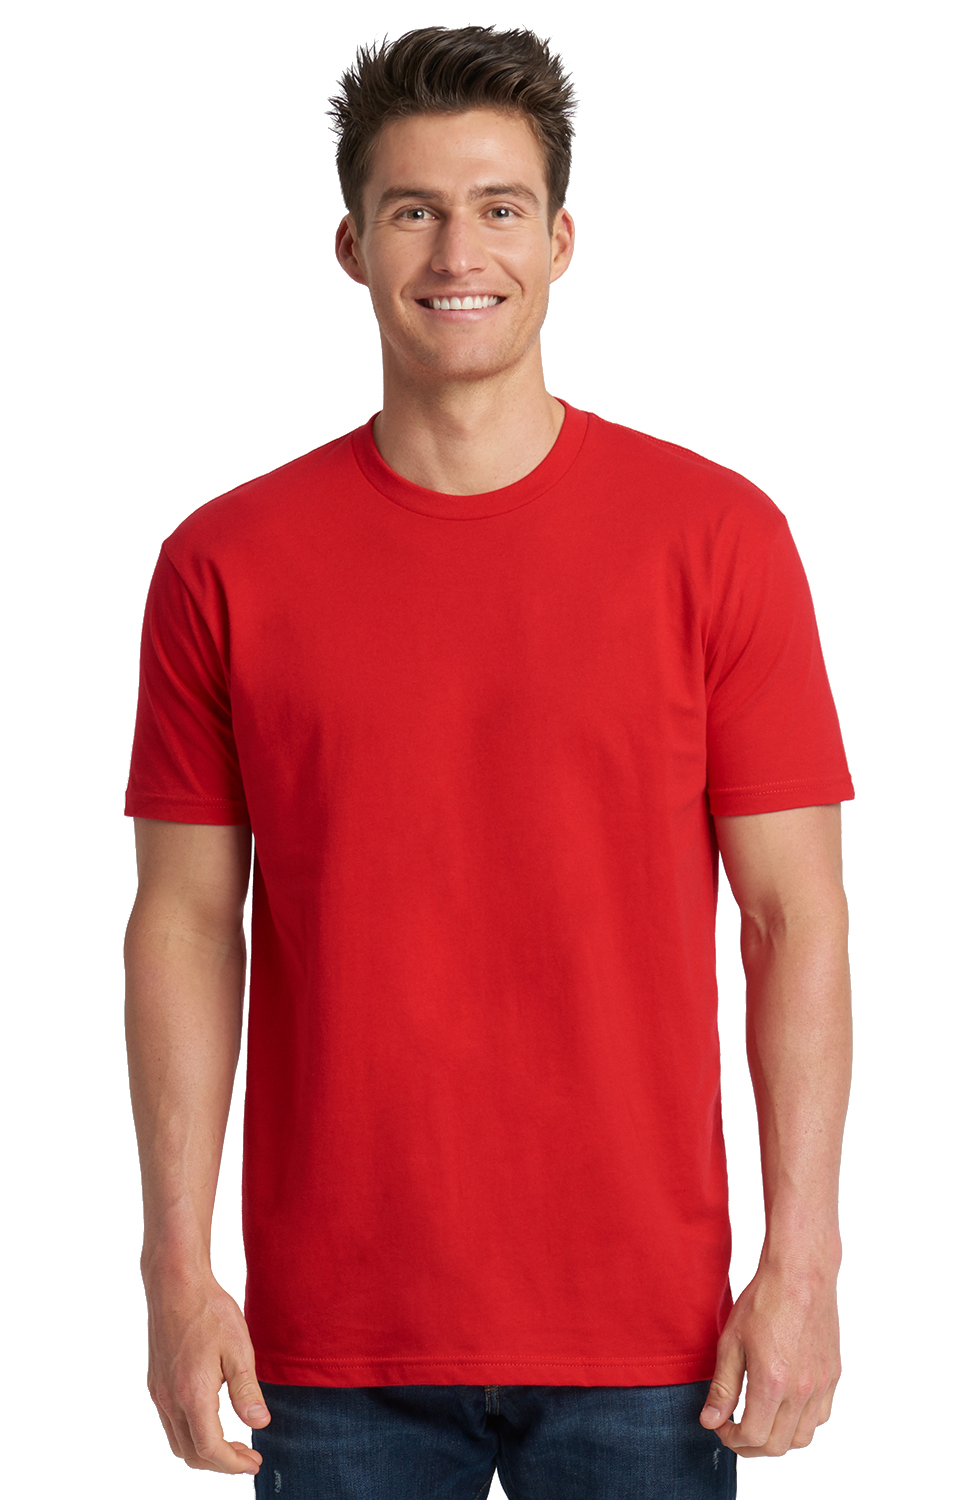 red tshirt